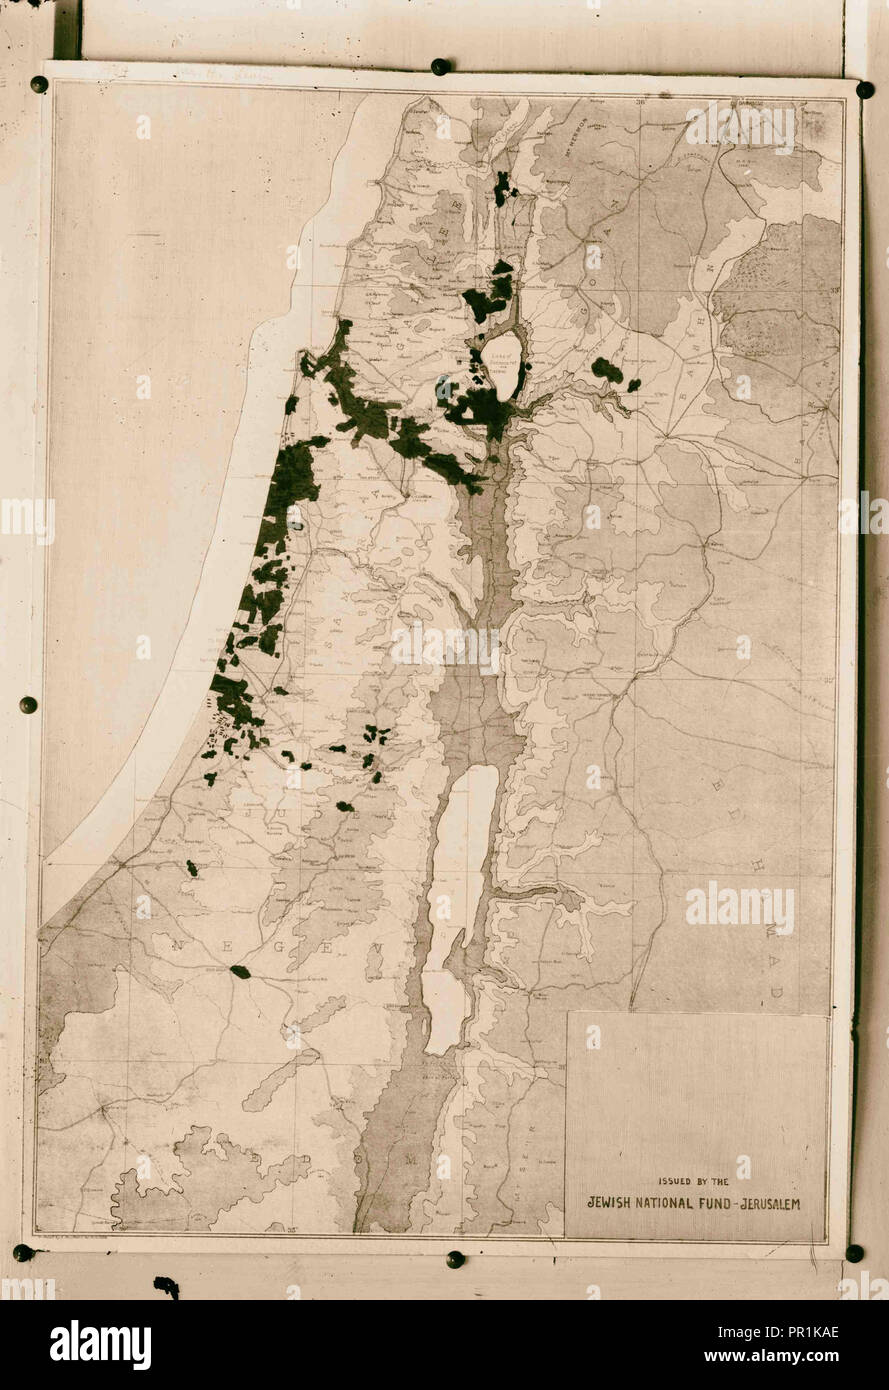 La carte. L'étendue des terres juives, émis par la Fondation national juif, Jérusalem, une autre vue de la carte des terres juives Banque D'Images